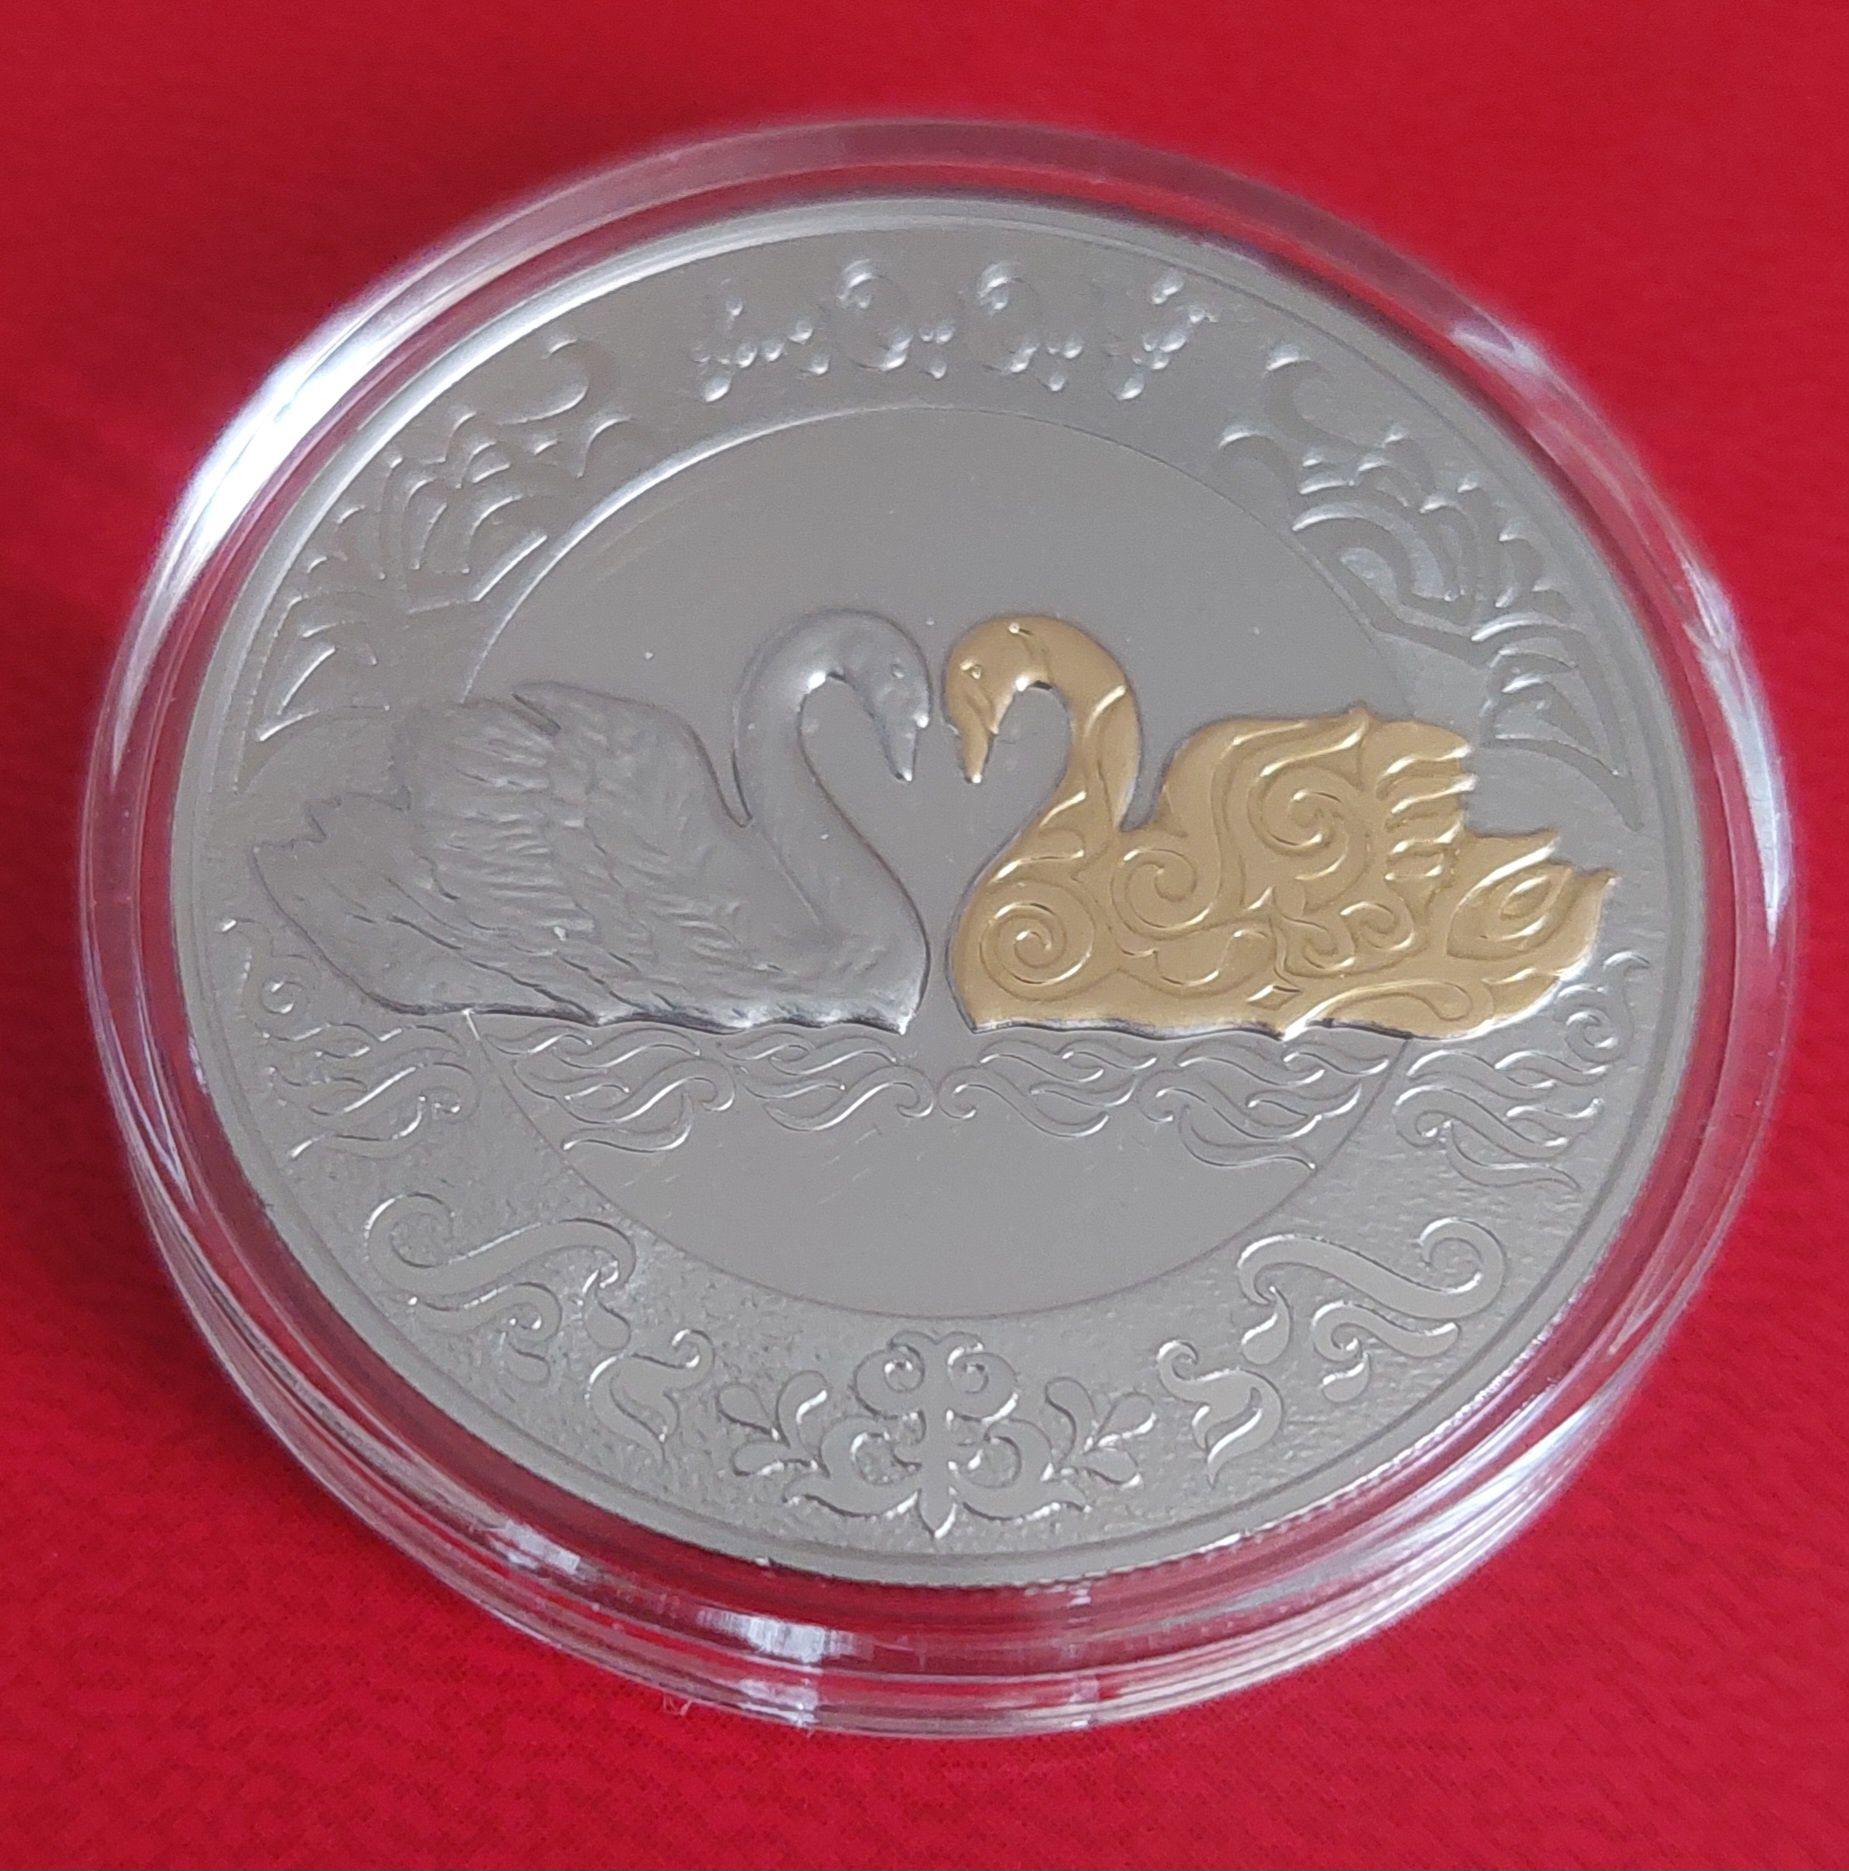 Монеты Казахстан